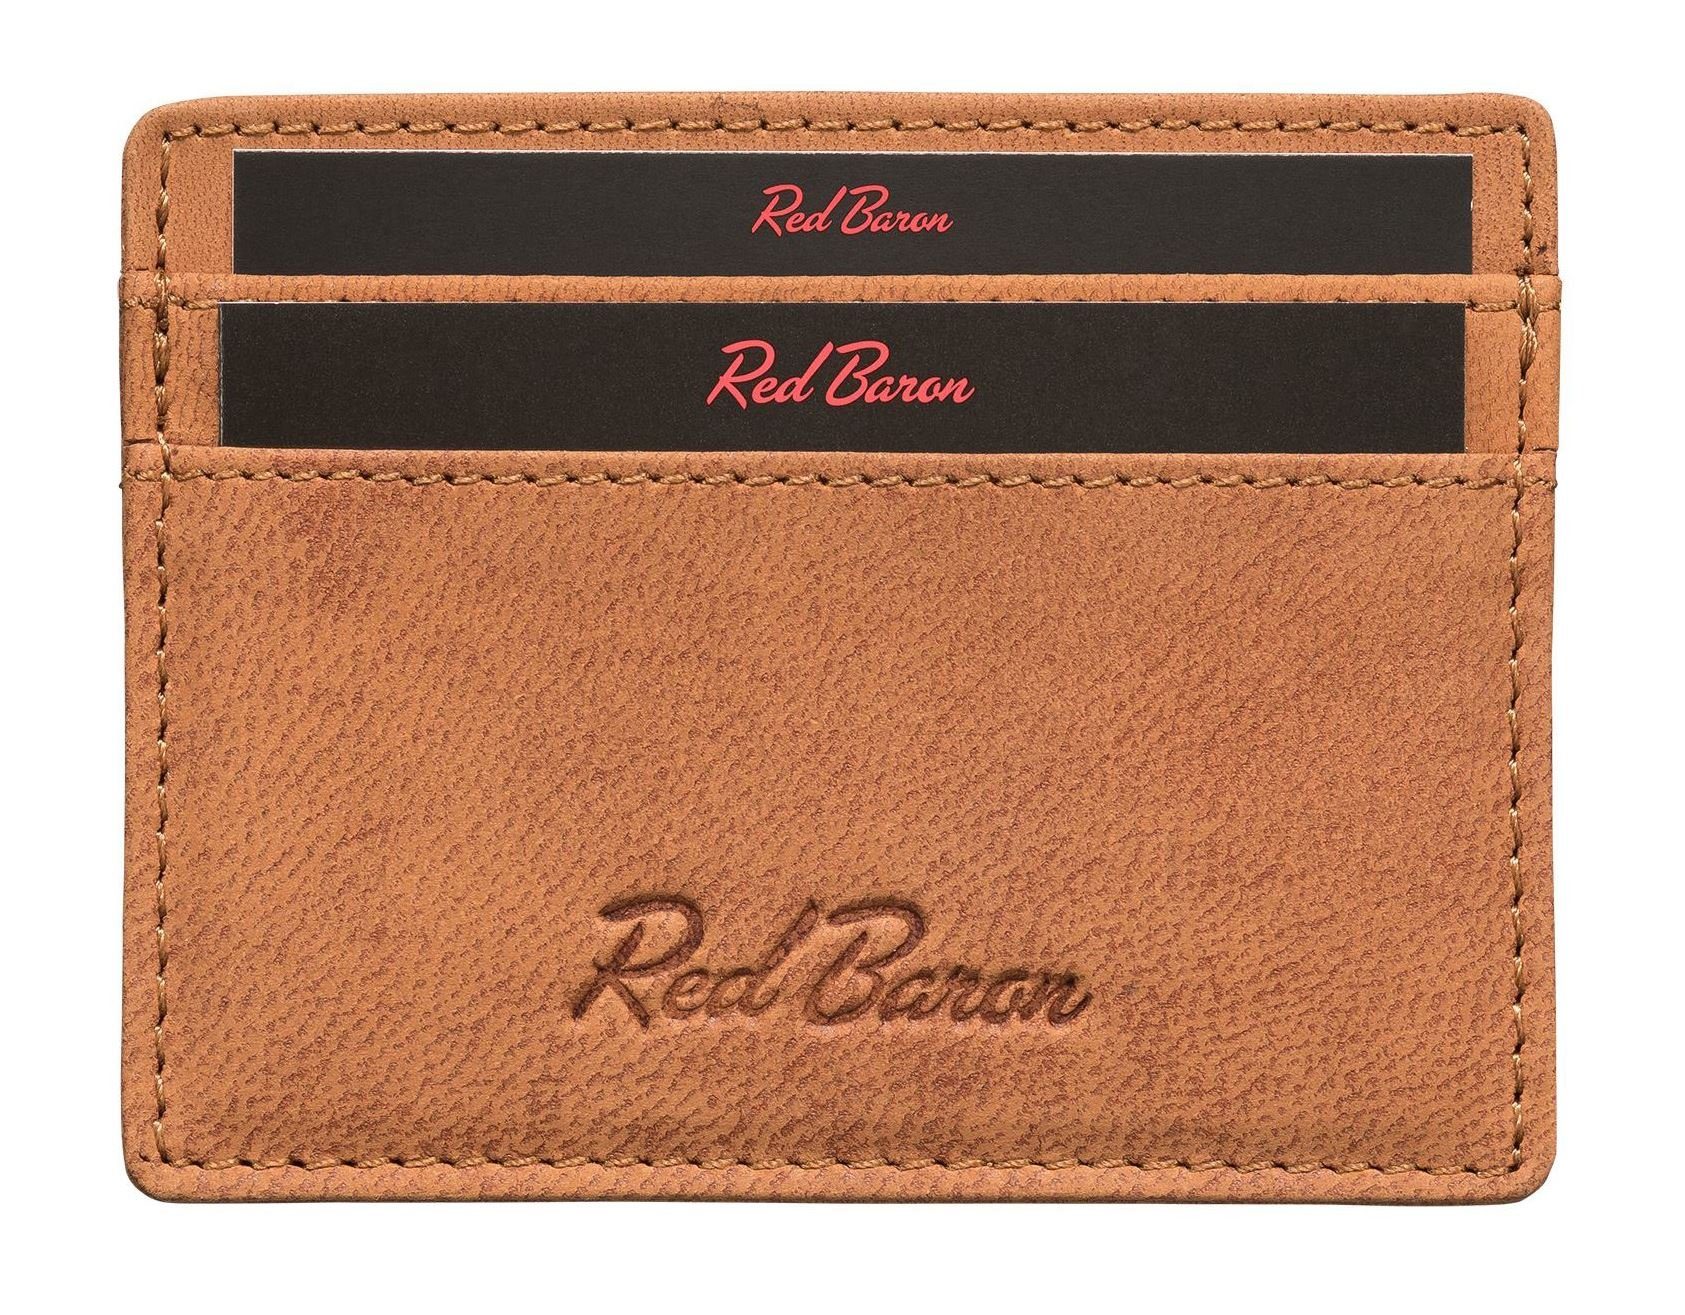 Red Baron Kartenetui RB-CC-001-02, 4 Kreditkartenfächer, Leder, schlicht, einfach | Etuis